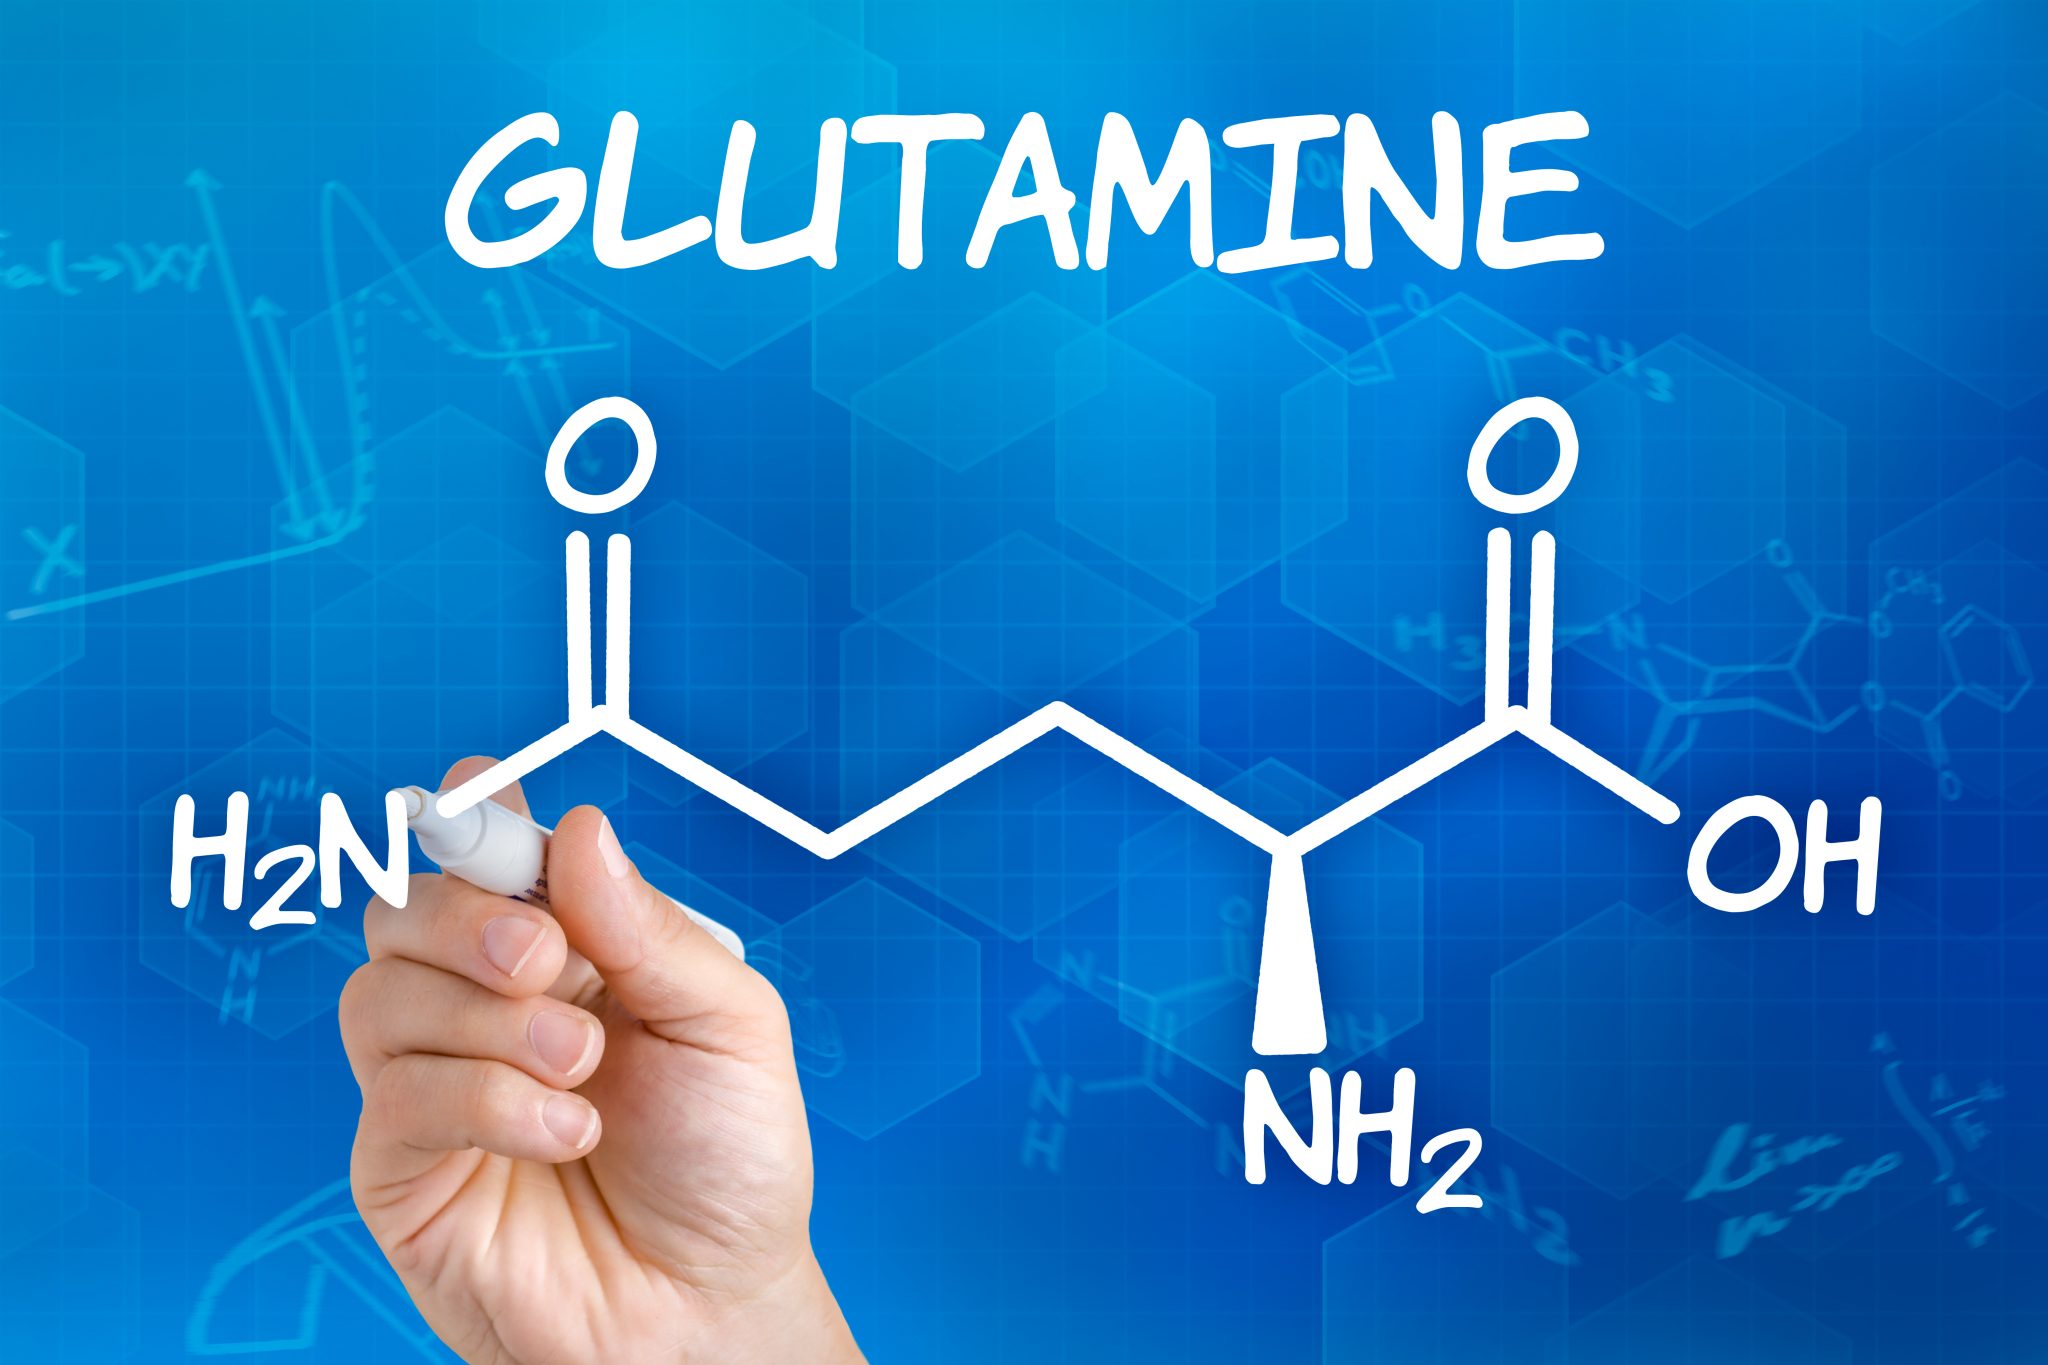 употреблять глютамин